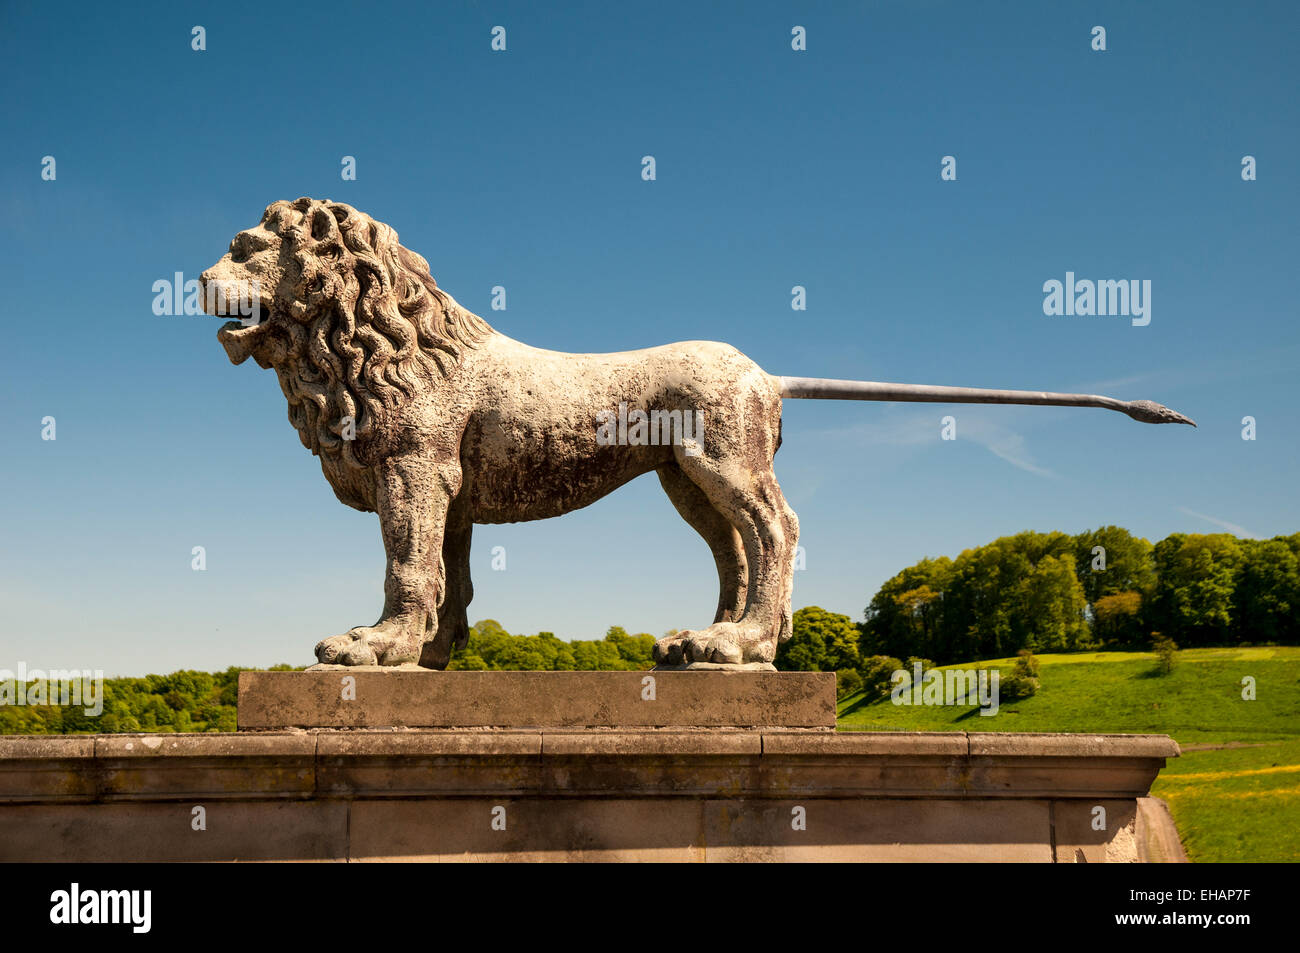 Un lion de pierre, emblème de la famille Percy, ornant le Lion qui porte bien son nom, le pont de la rivière Aln à Alnwick en ép Banque D'Images